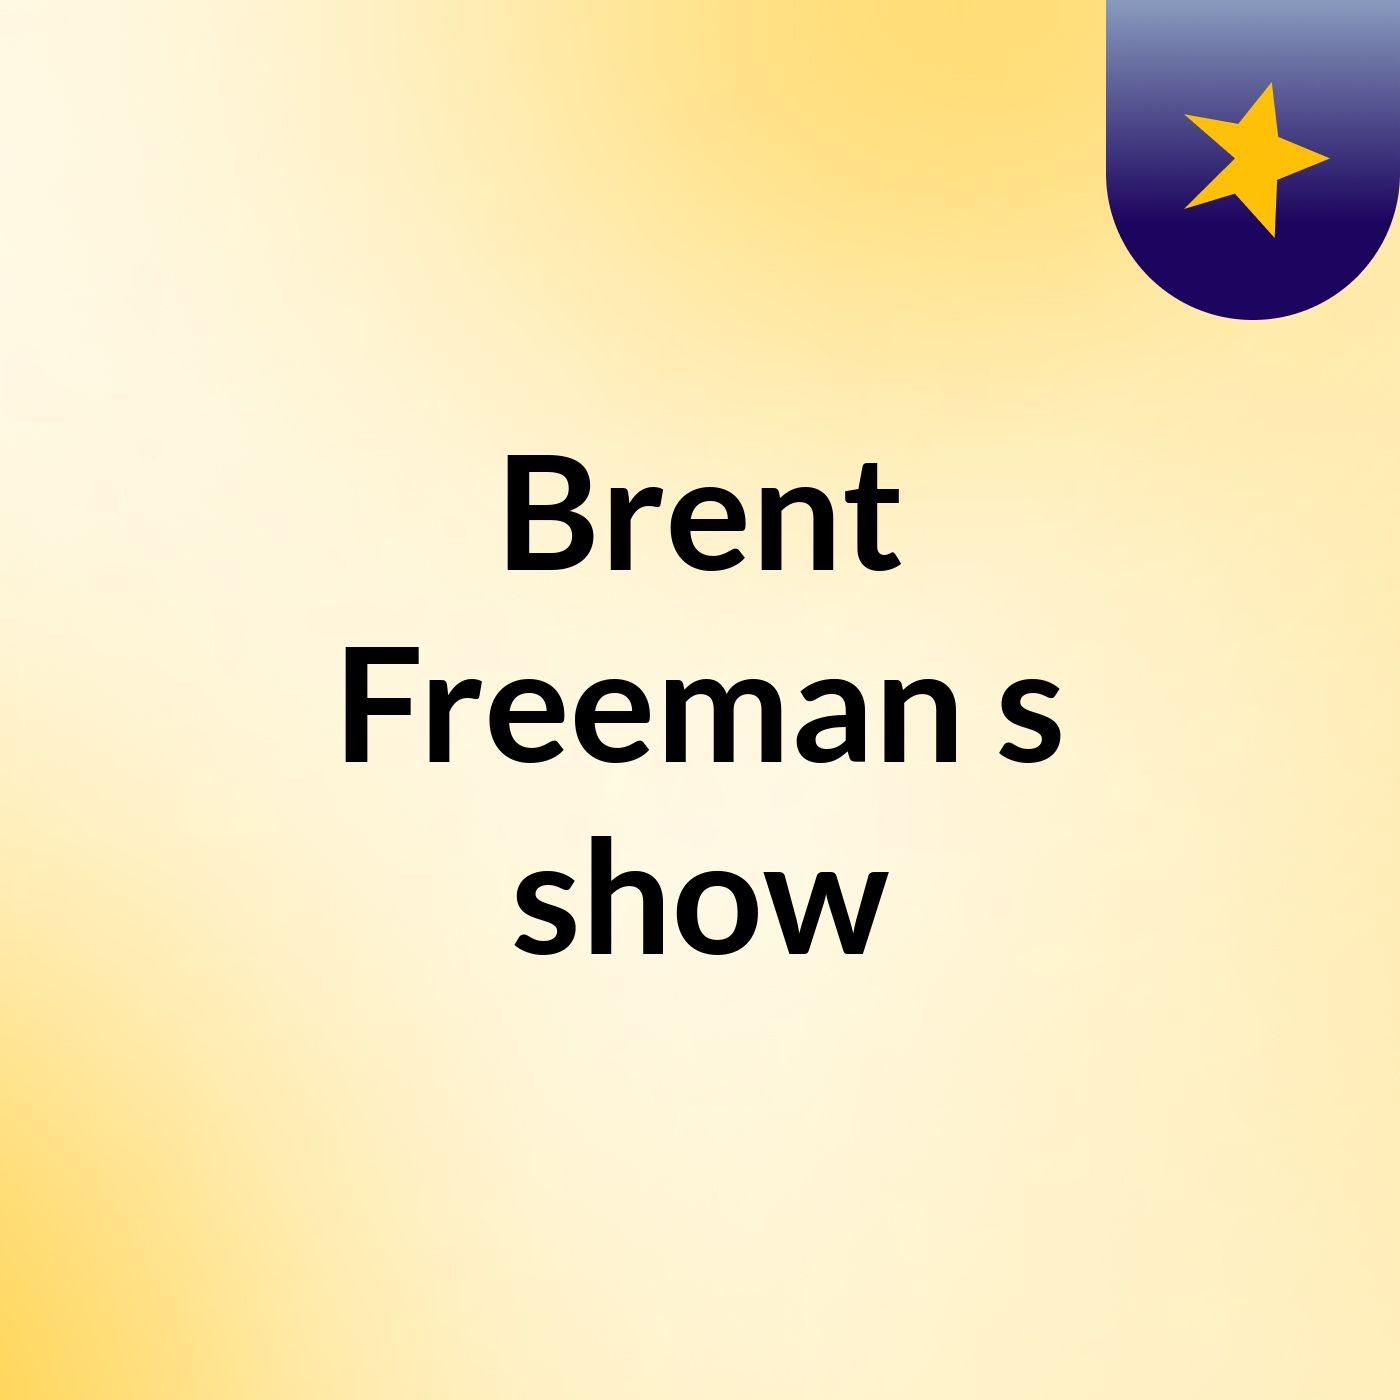 Episode 12 - Brent Freeman's show